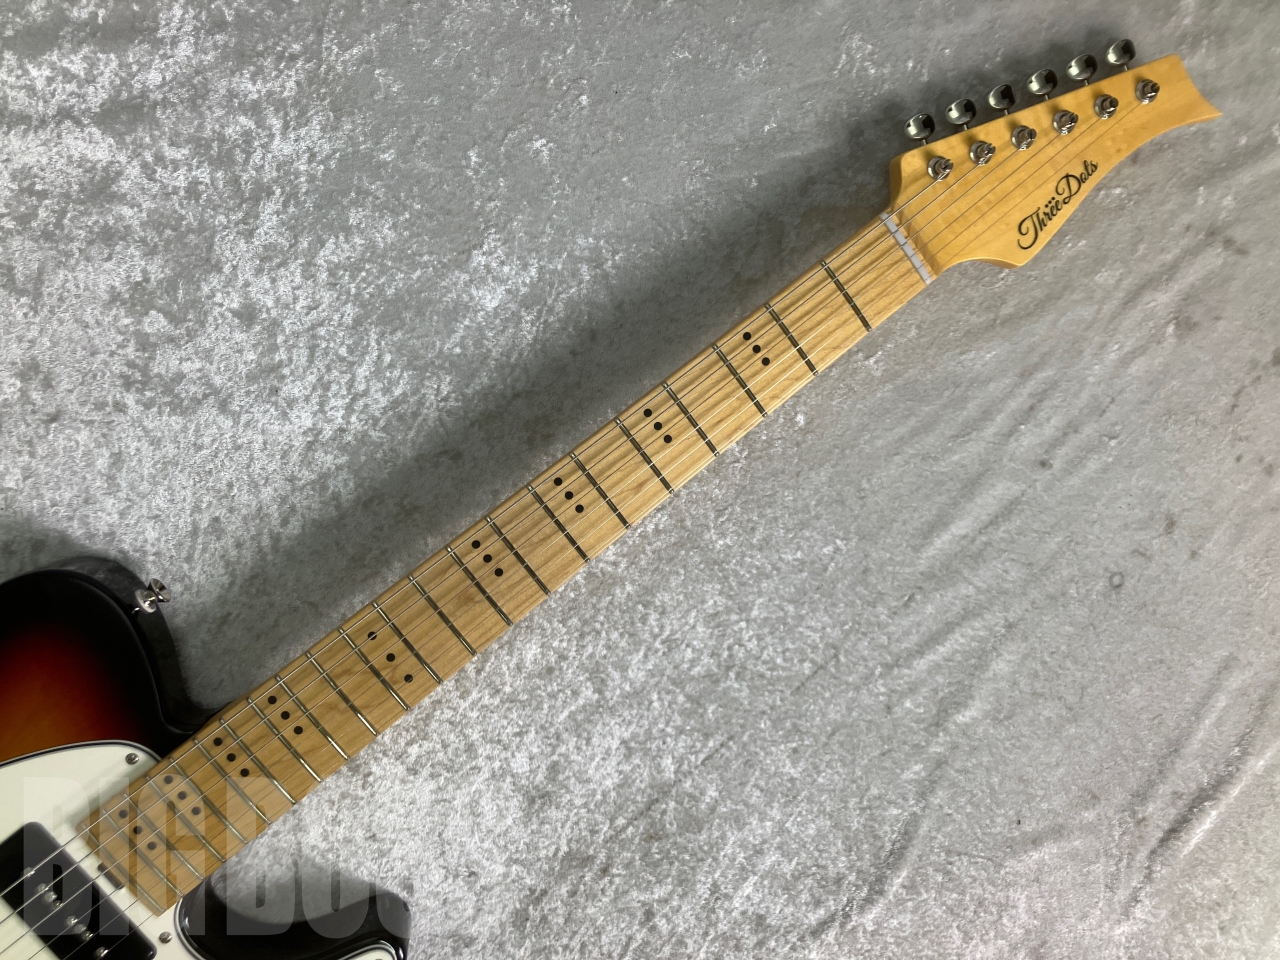 【即納可能/生産終了モデル】Three Dots Guitars(スリードッツギターズ) T Model / Maple Fingerboard / 3 Tone Burst お茶の水駅前店(東京)